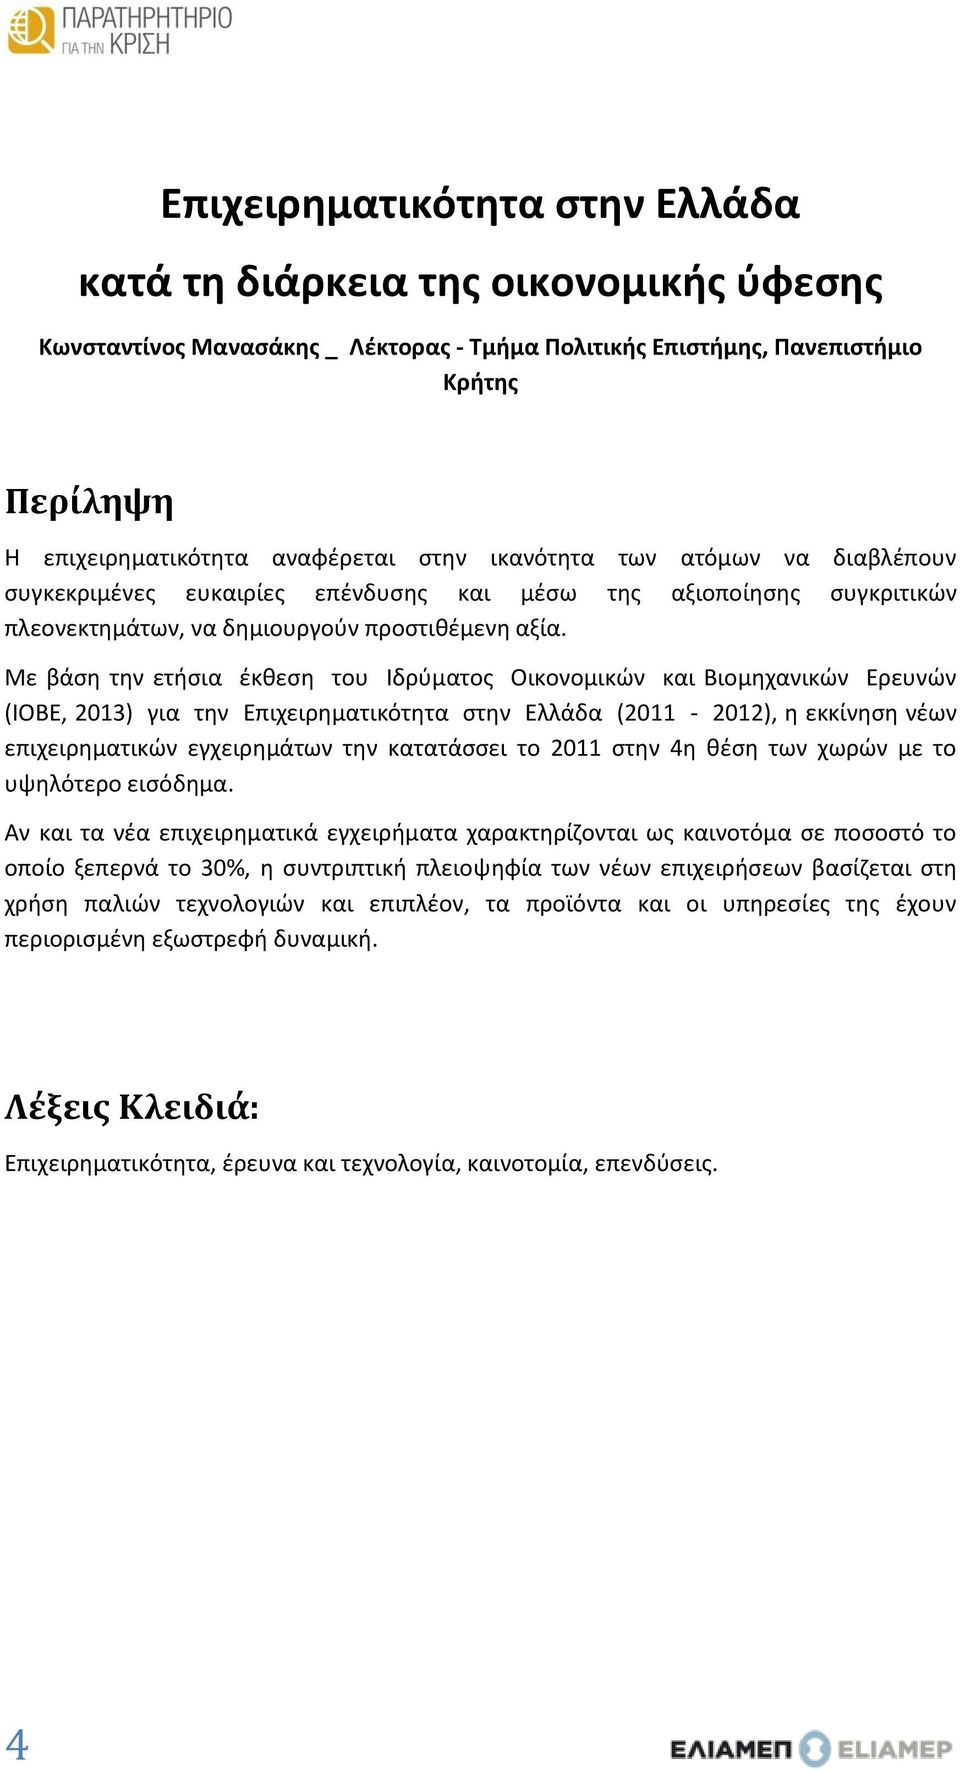 Με βάση την ετήσια έκθεση του Ιδρύµατος Οικονοµικών και Βιοµηχανικών Ερευνών (ΙΟΒΕ, 2013) για την Επιχειρηματικότητα στην Ελλάδα (2011-2012), η εκκίνηση νέων επιχειρηματικών εγχειρημάτων την